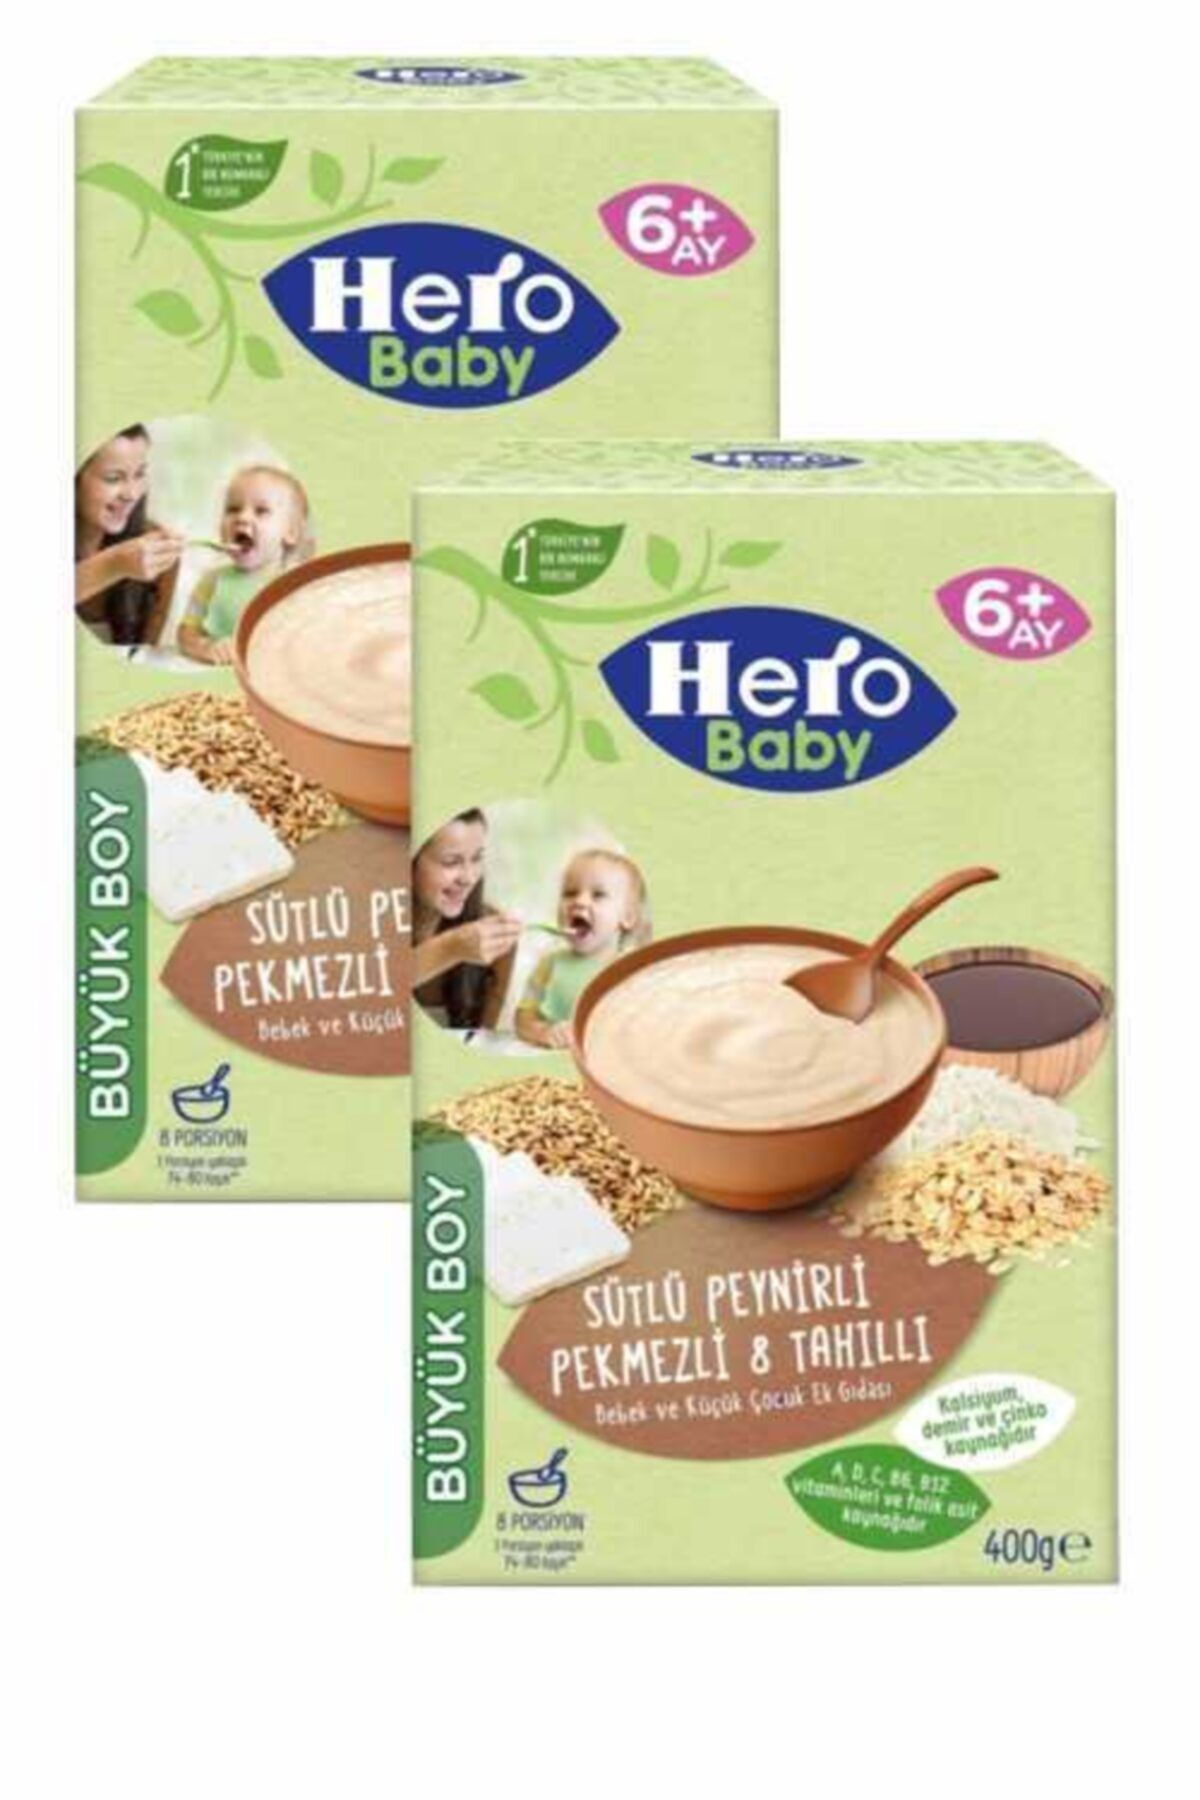 Hero Baby Hero Kaşık Mama Sütlü Peynirli Pekmezli 8 Tahıllı 400 Gr 2'li Paket